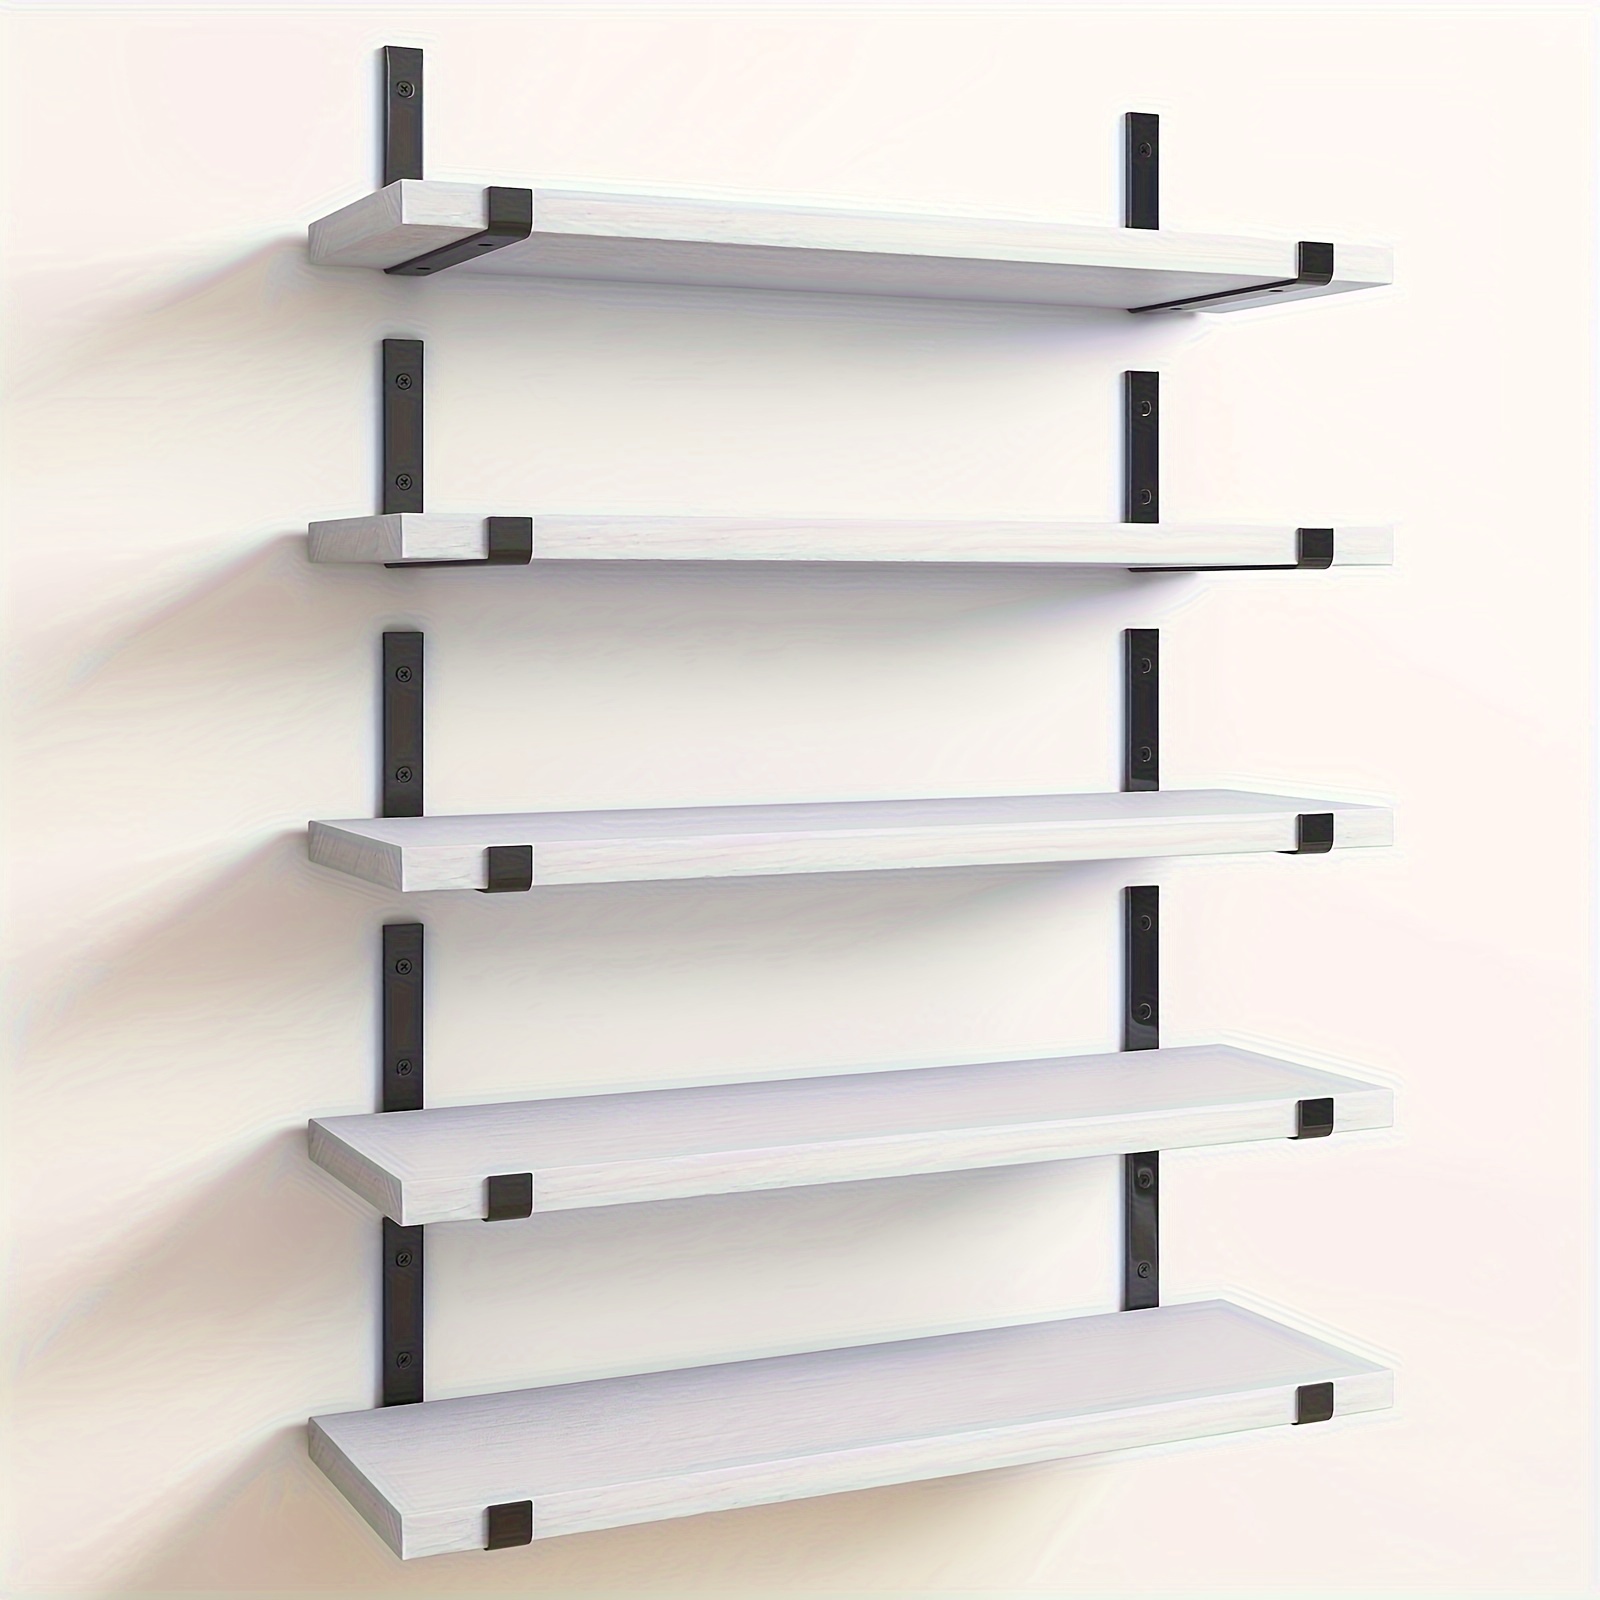 repisa-varios  Home decor shelves, Shelf design, Wall shelf decor